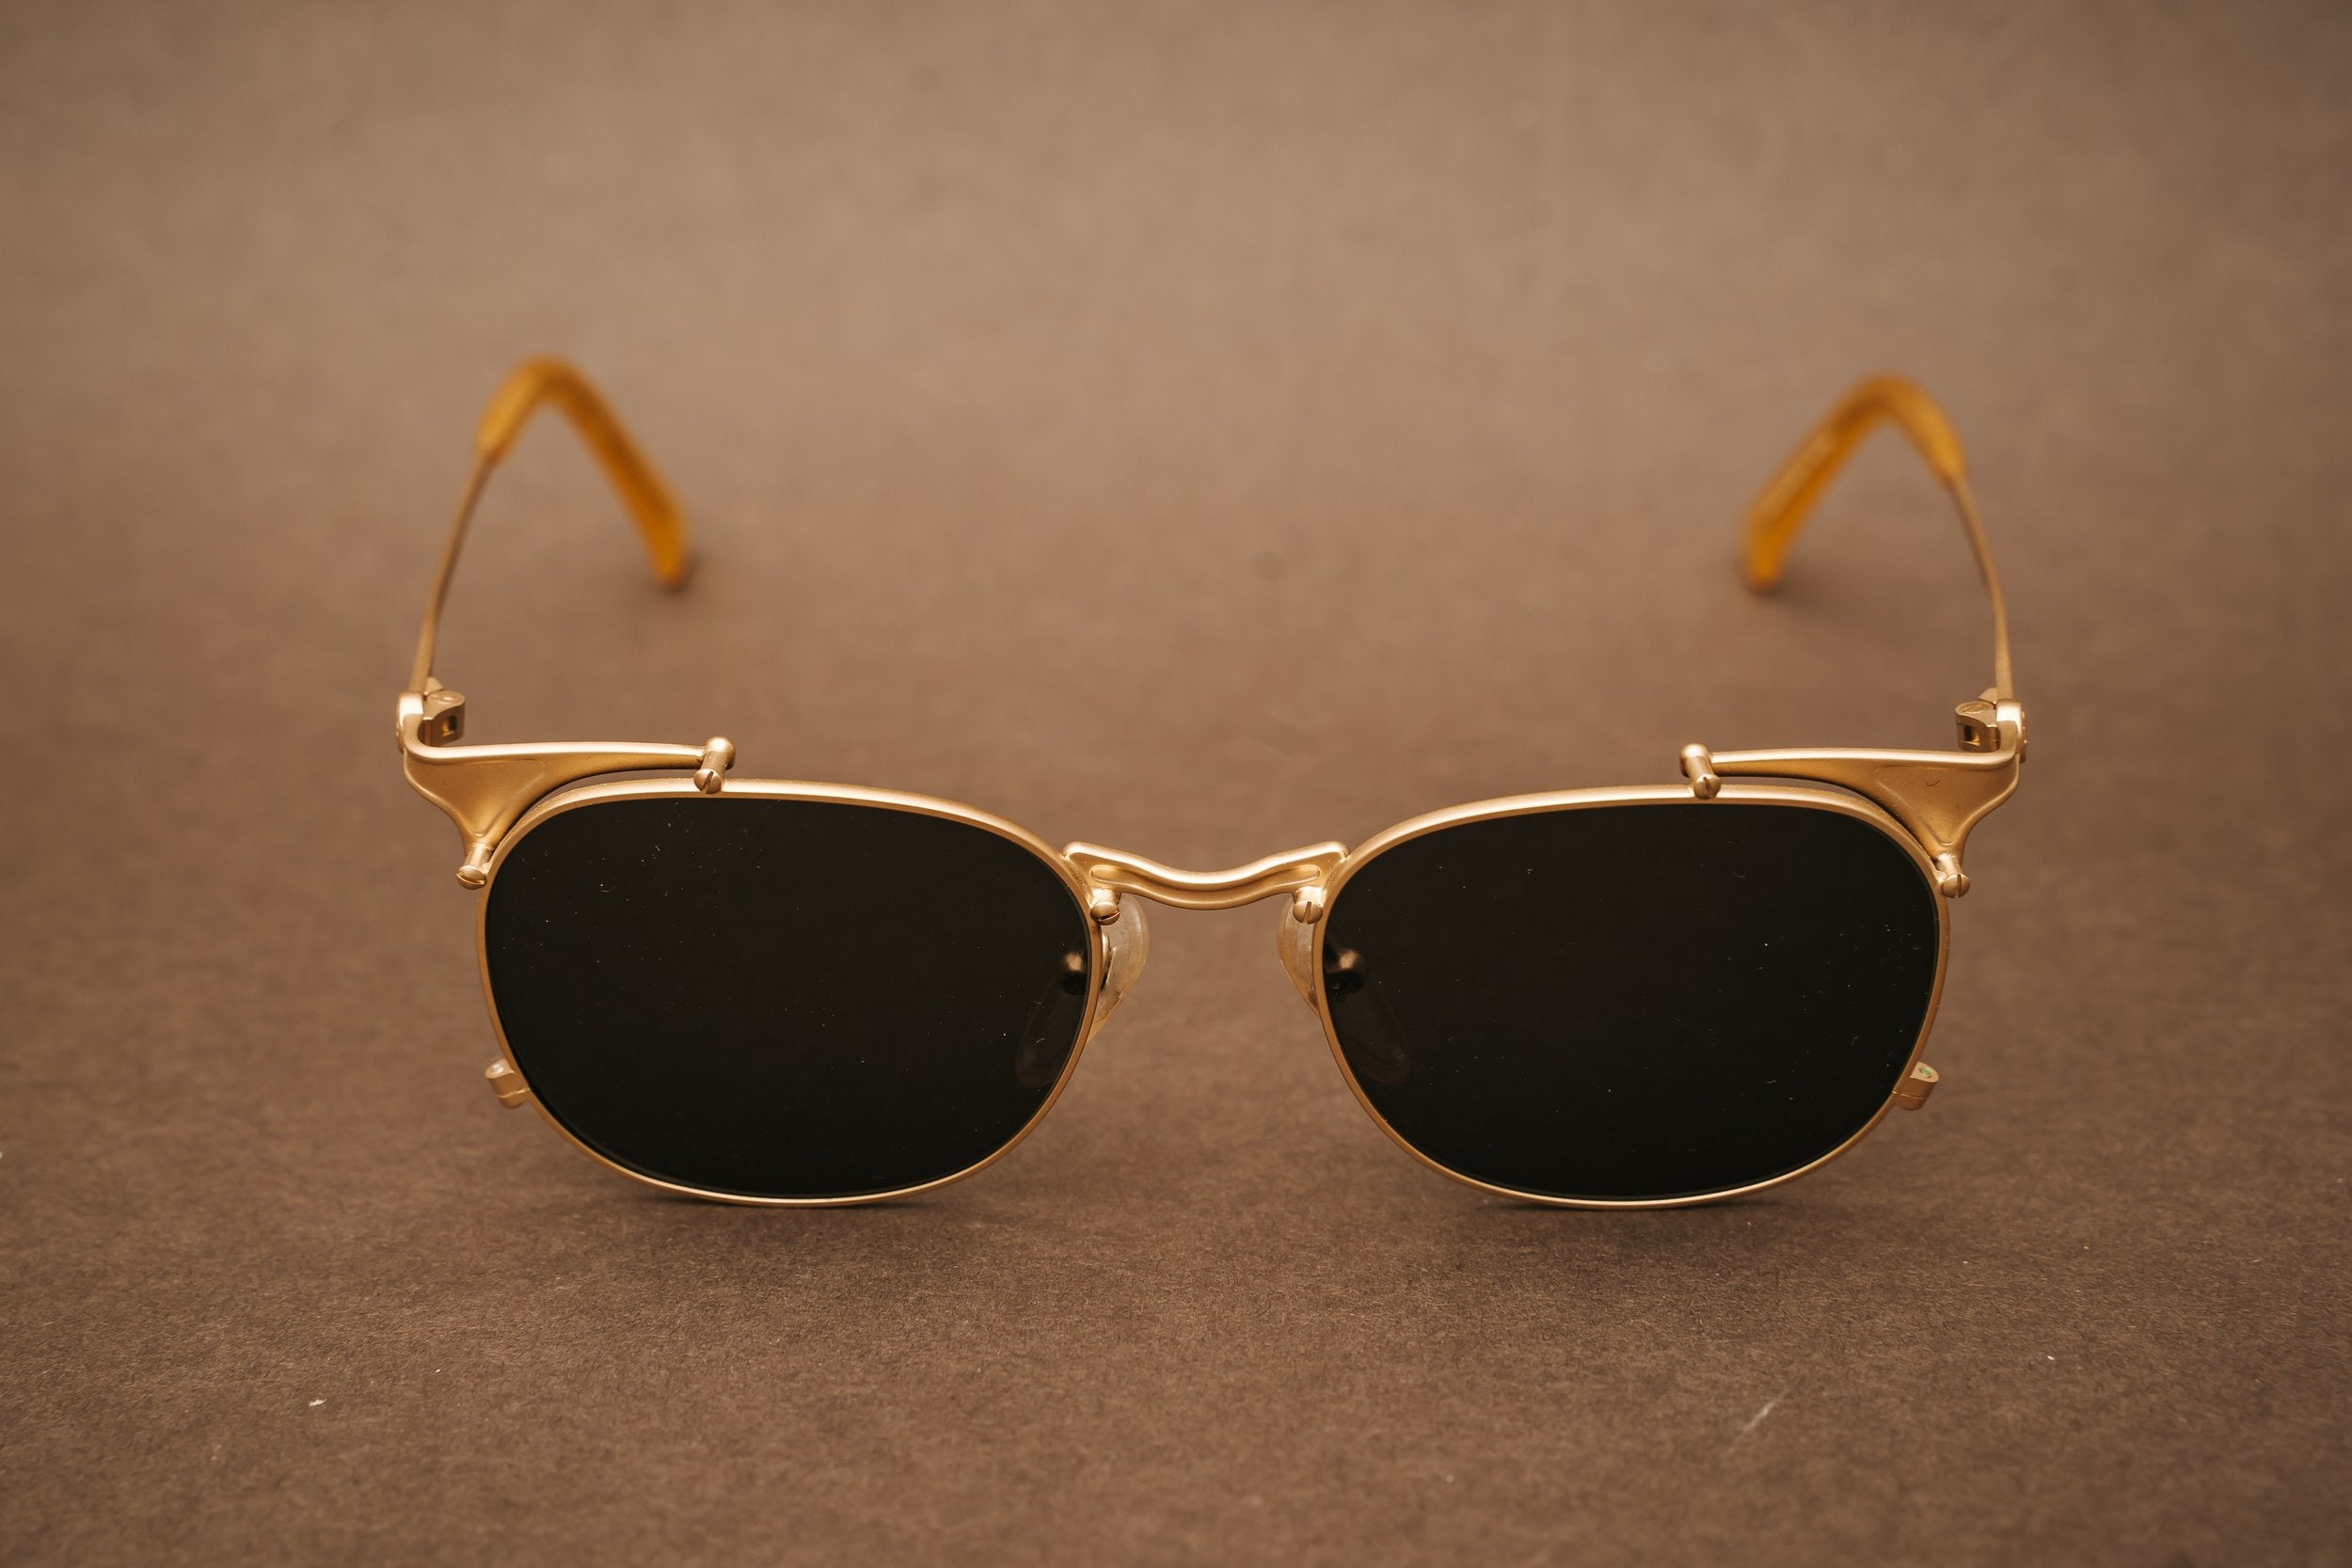 Jean Paul Gaultier 56-2175 sunglasses